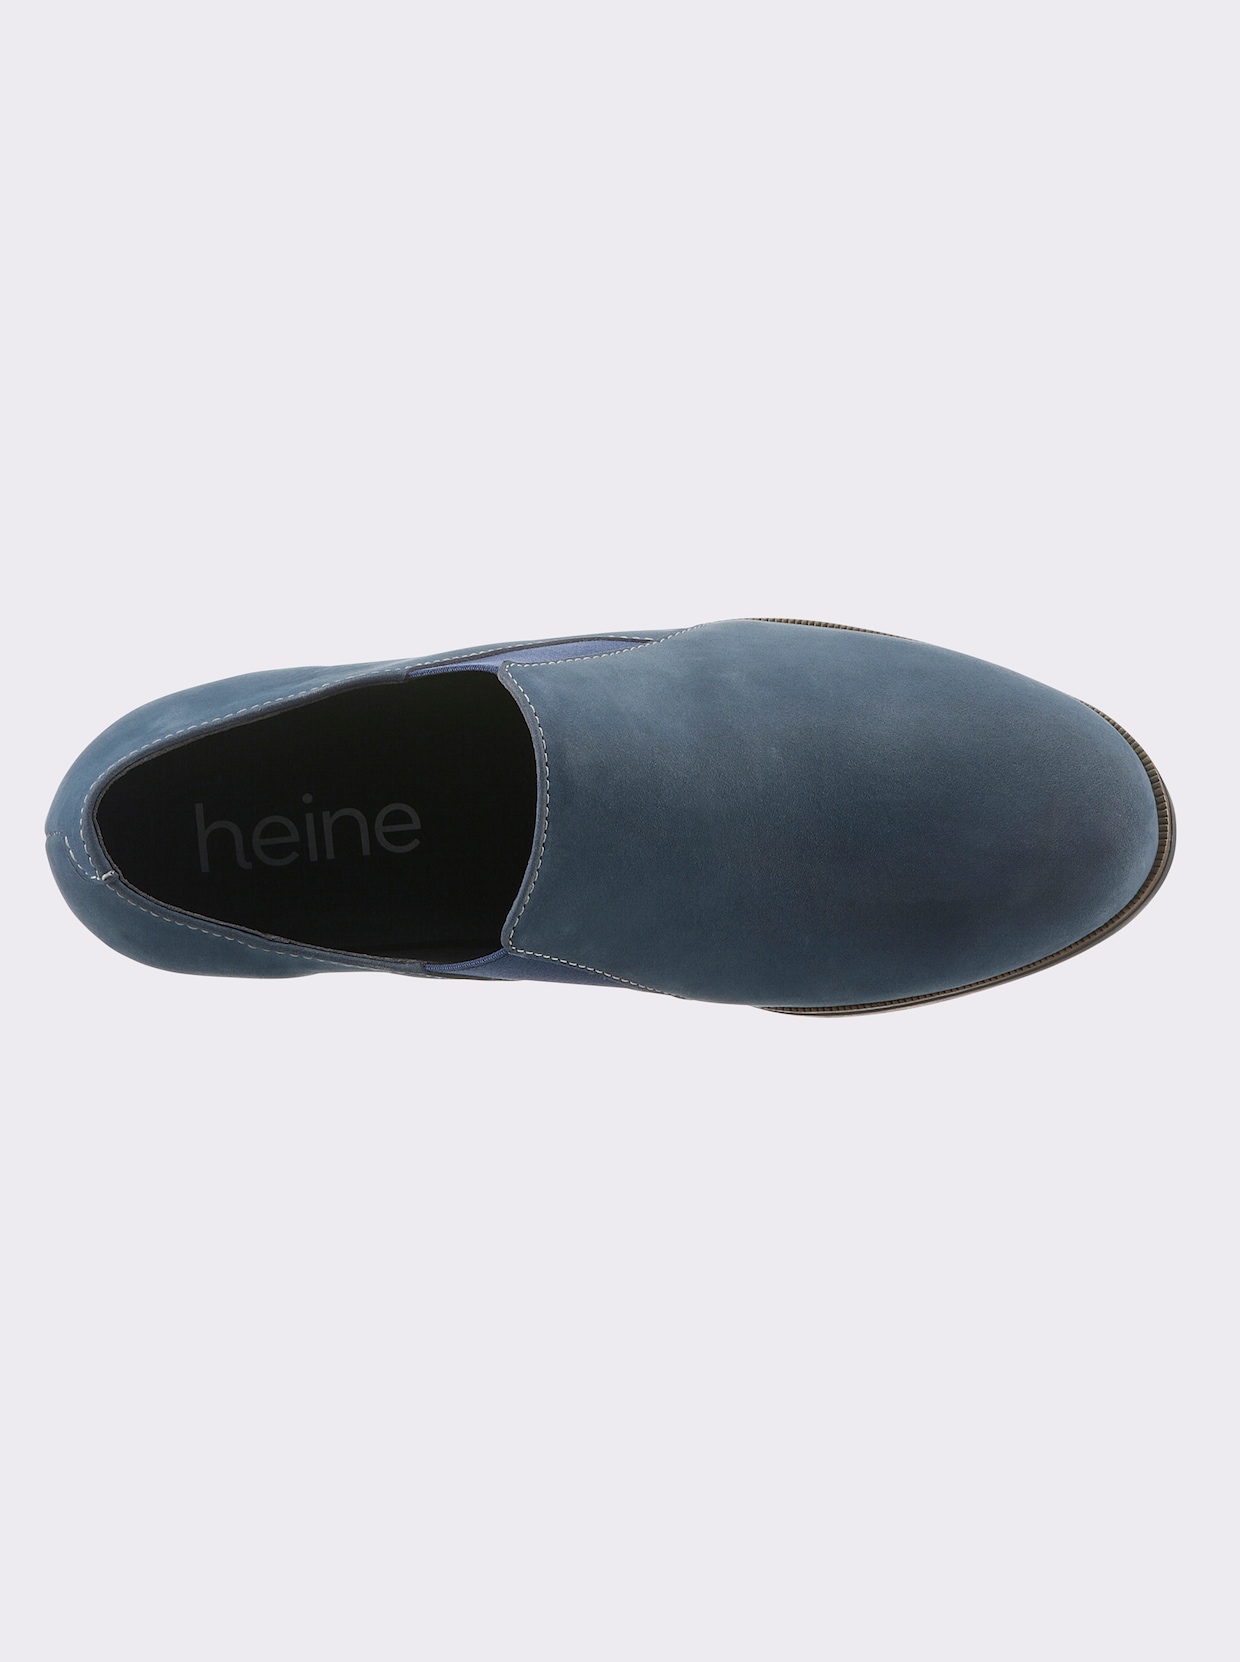 heine Hoogfrontpumps - blauw